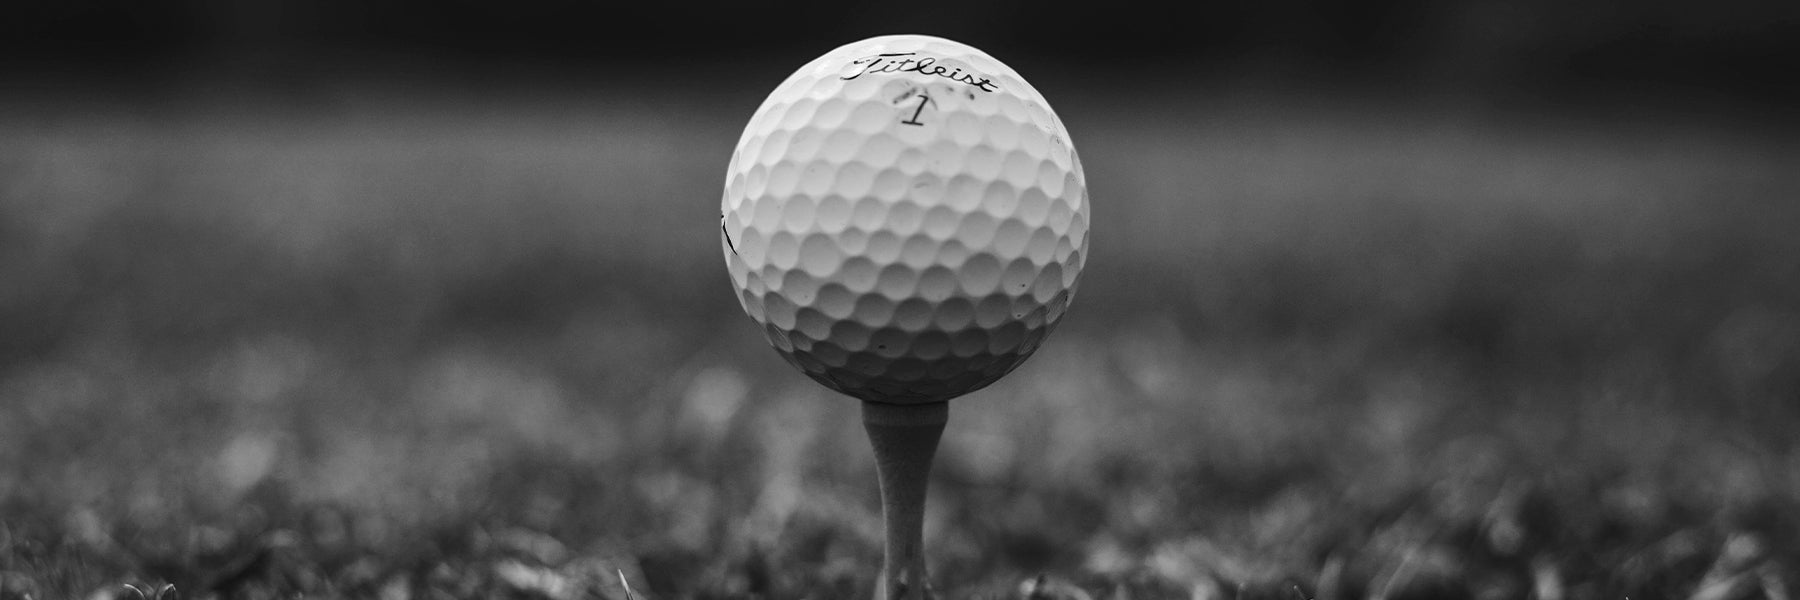 titleist golf ball on a tee